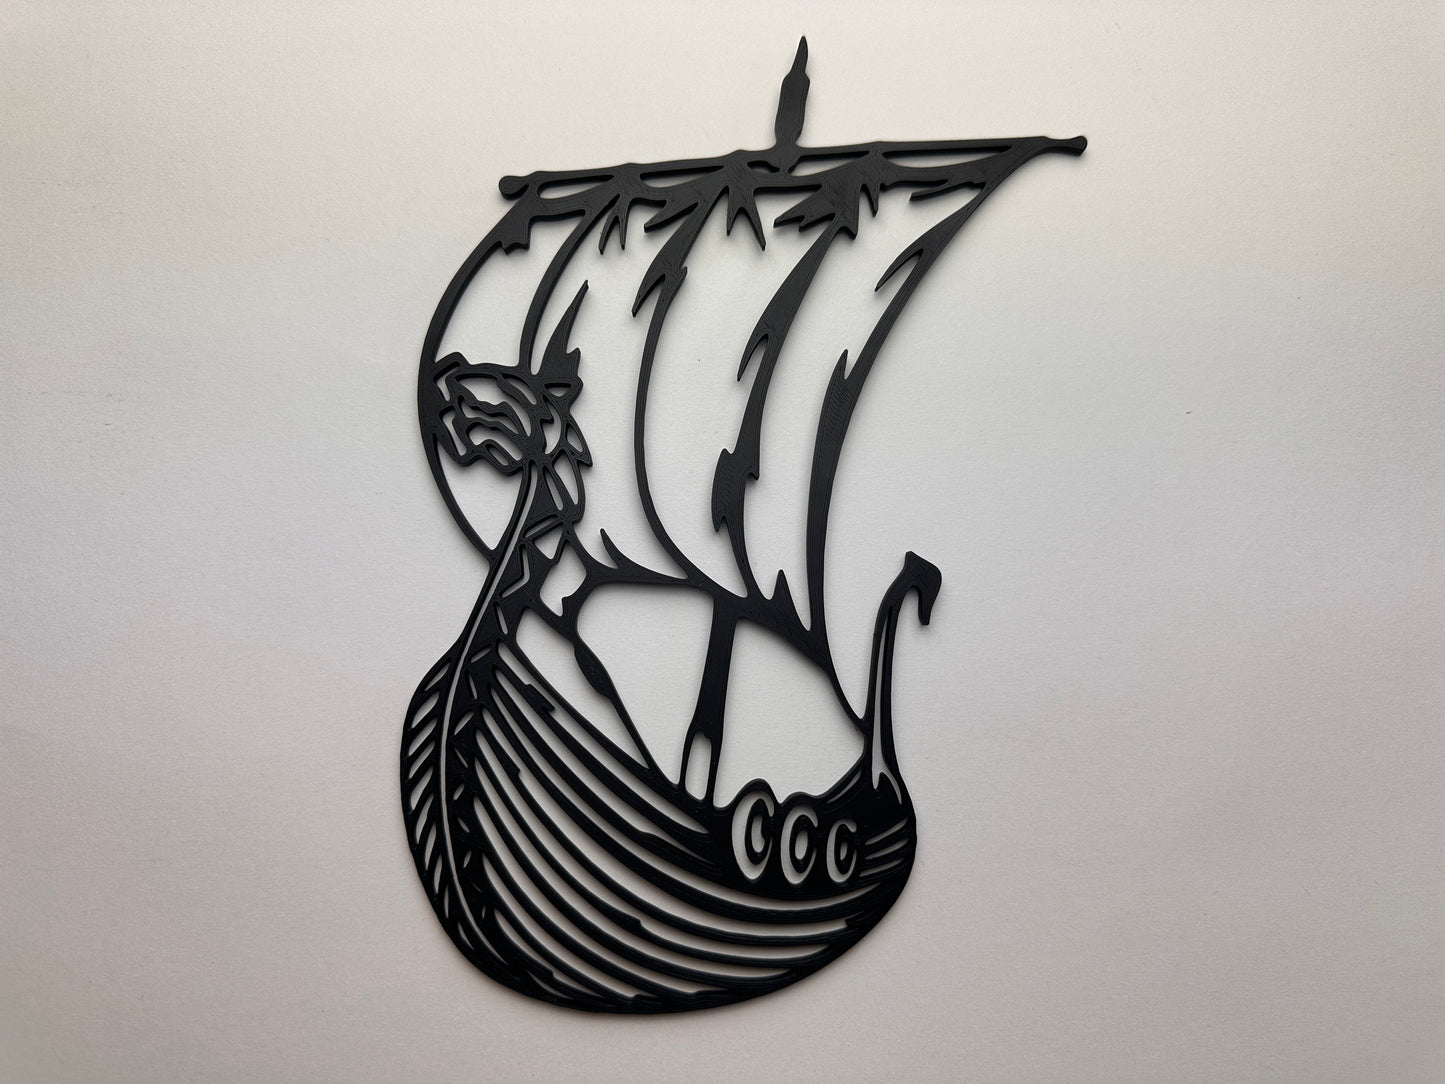 Episches Wikingerschiff - 3D-gedruckte Wanddekoration aus PLA-Kunststoff!